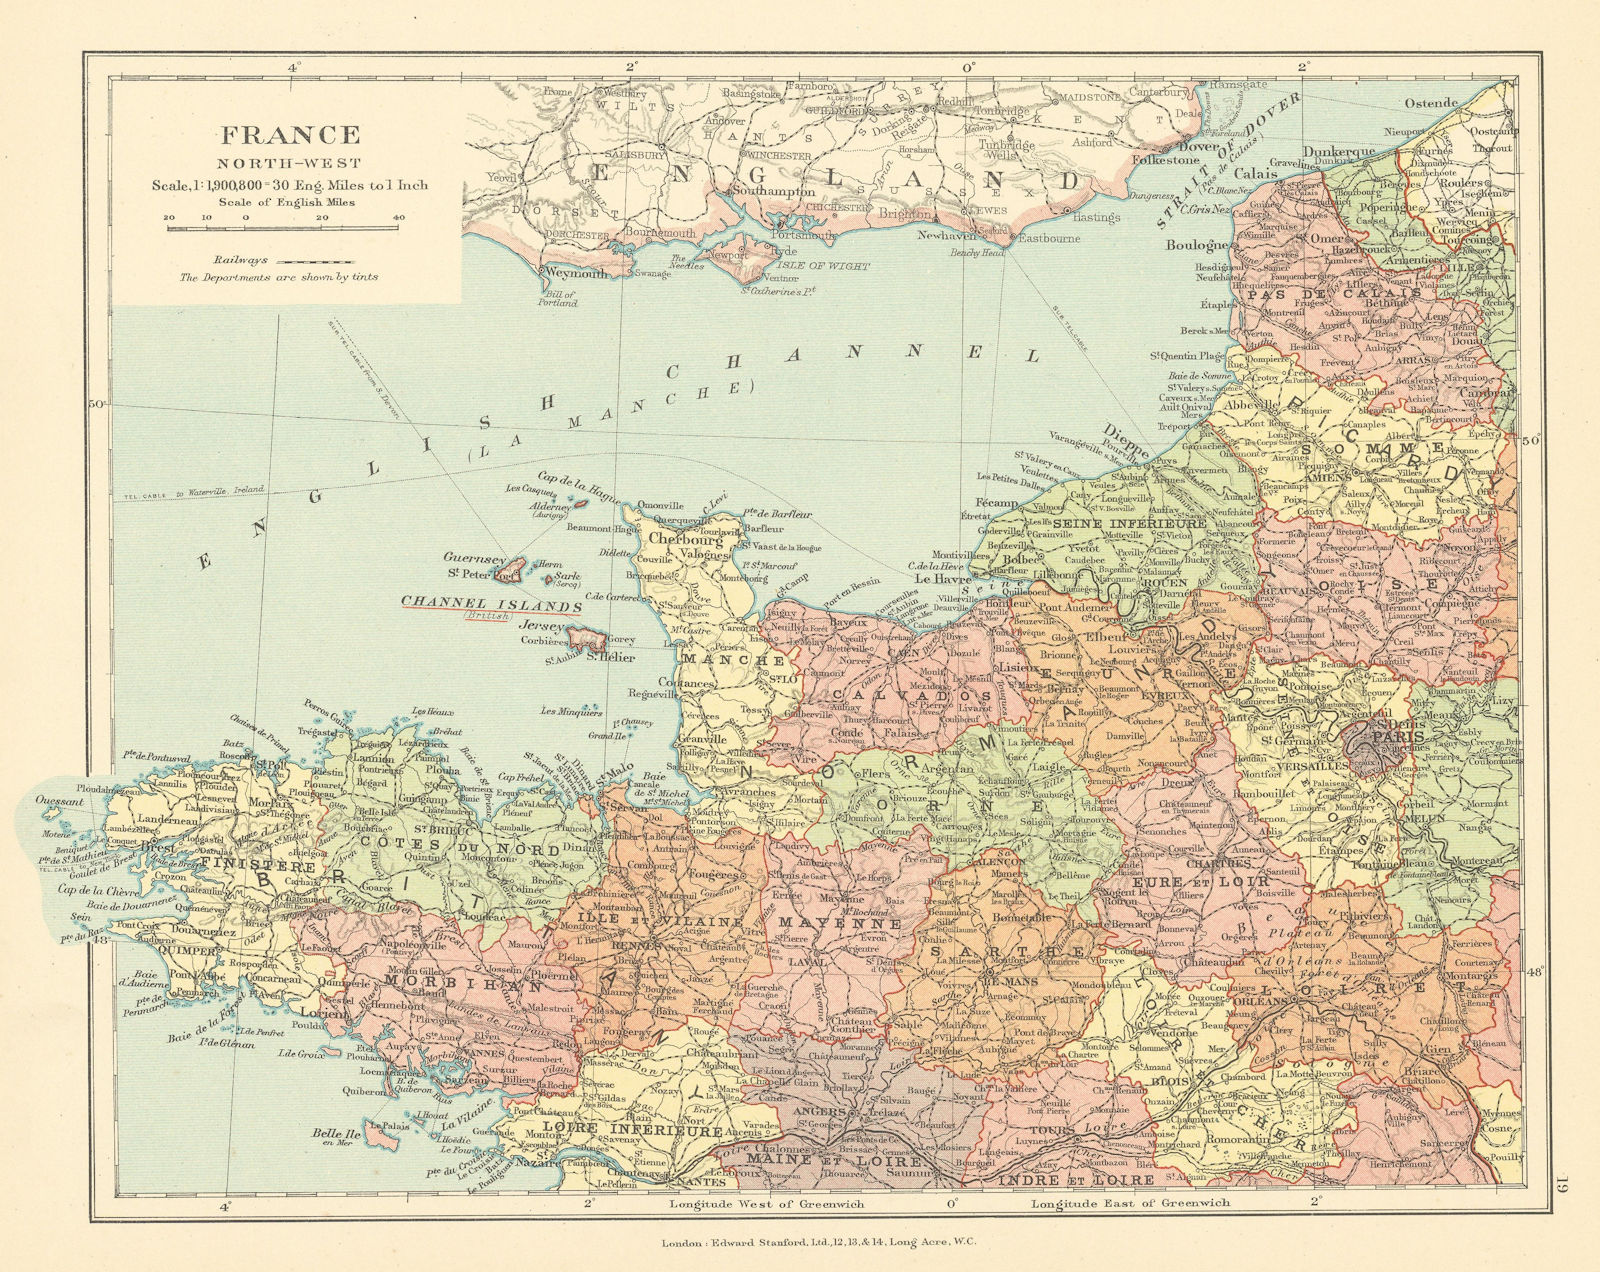 France North-West. Britanny Normandy Loire hauts de France. STANFORD c1925 map